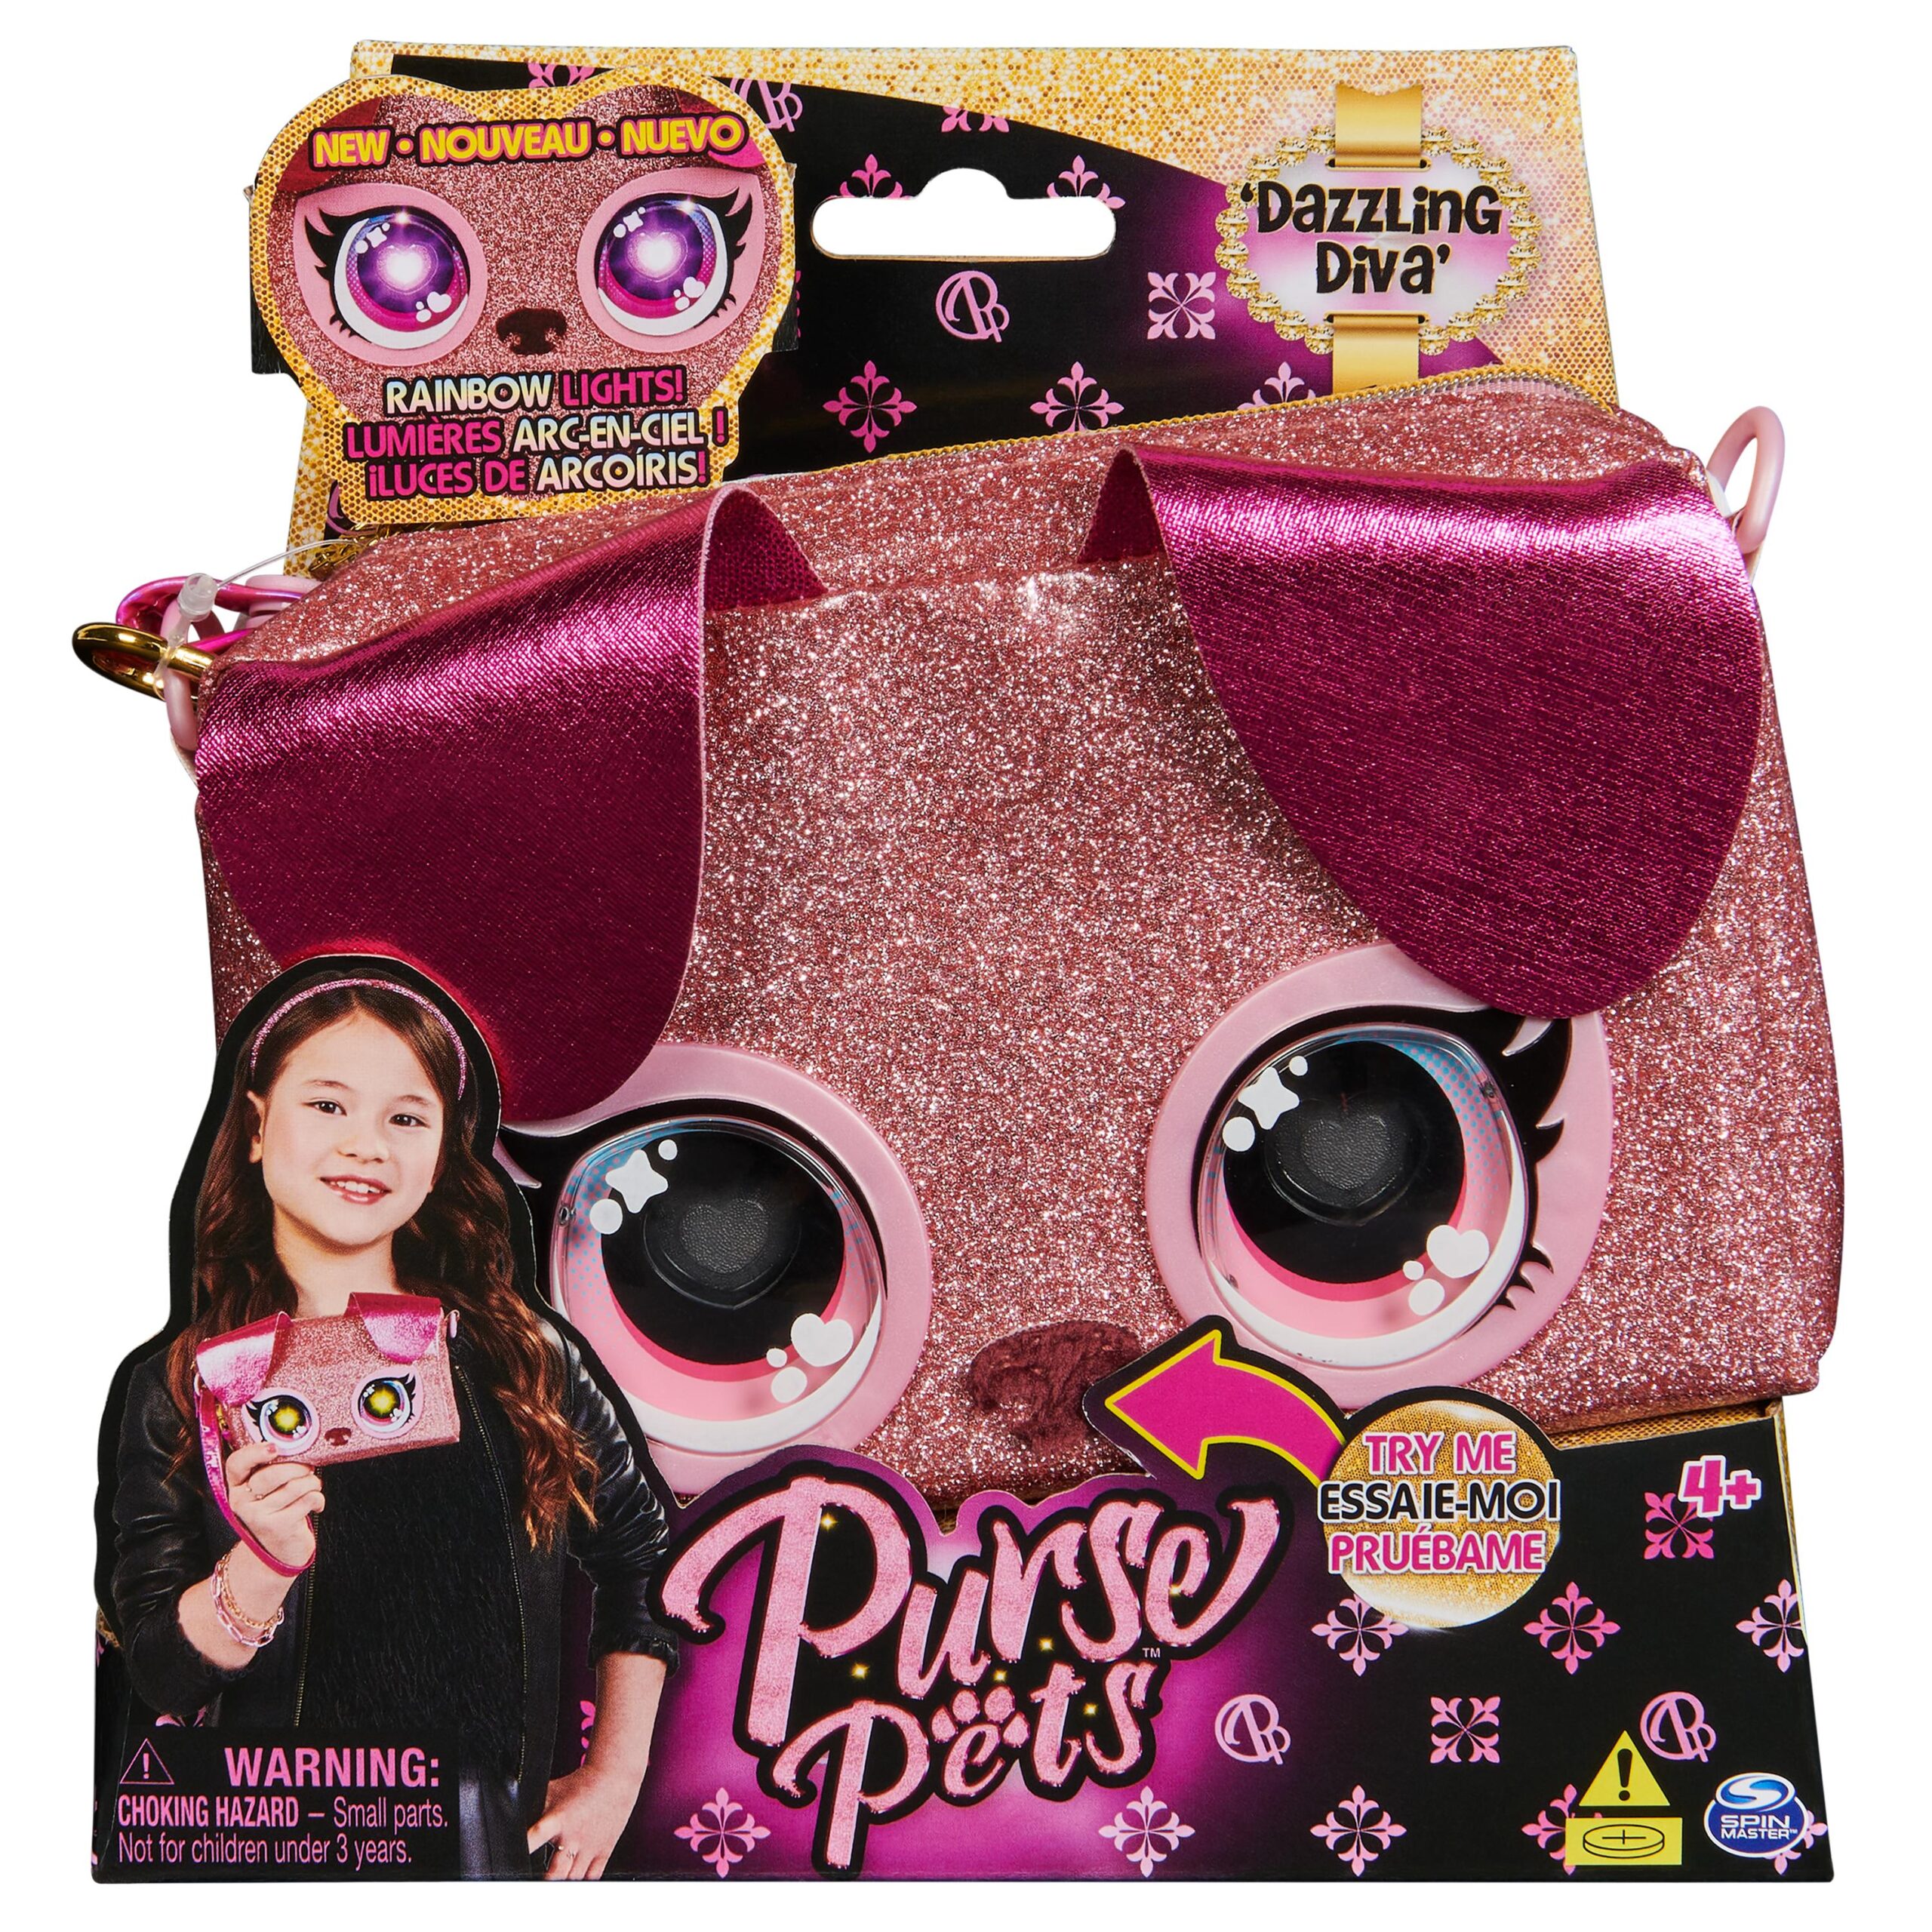 Purse pets, mini borsetta rosa con occhi arcobaleno che si illuminano, giocattoli per bambine dai 4 anni in su - PURSE PETS